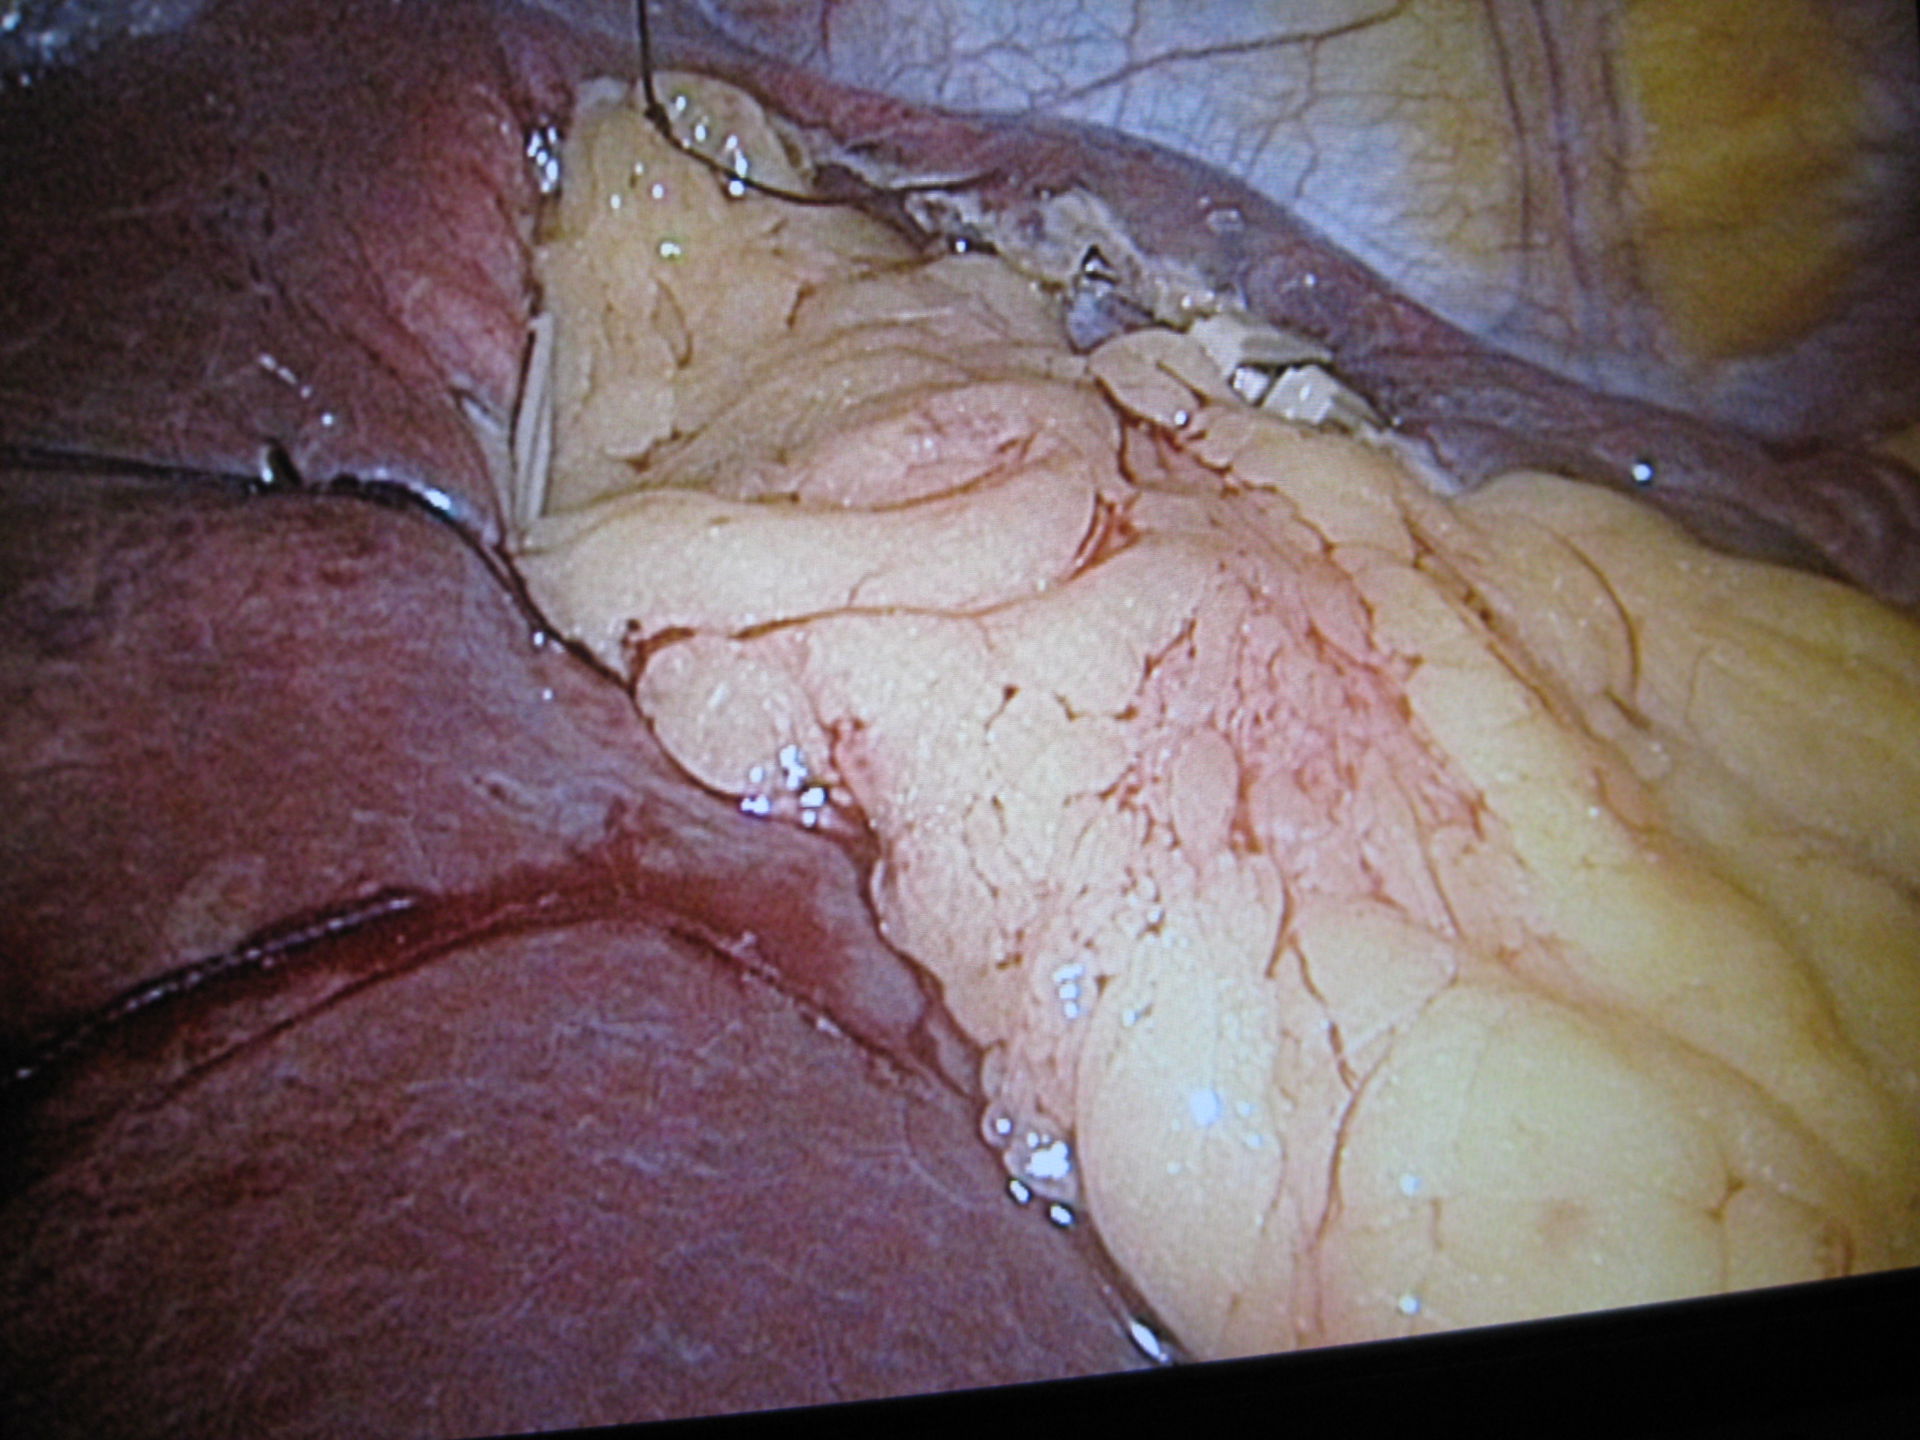 Leberzyste-Netzplombe laparoskopisch eingebracht